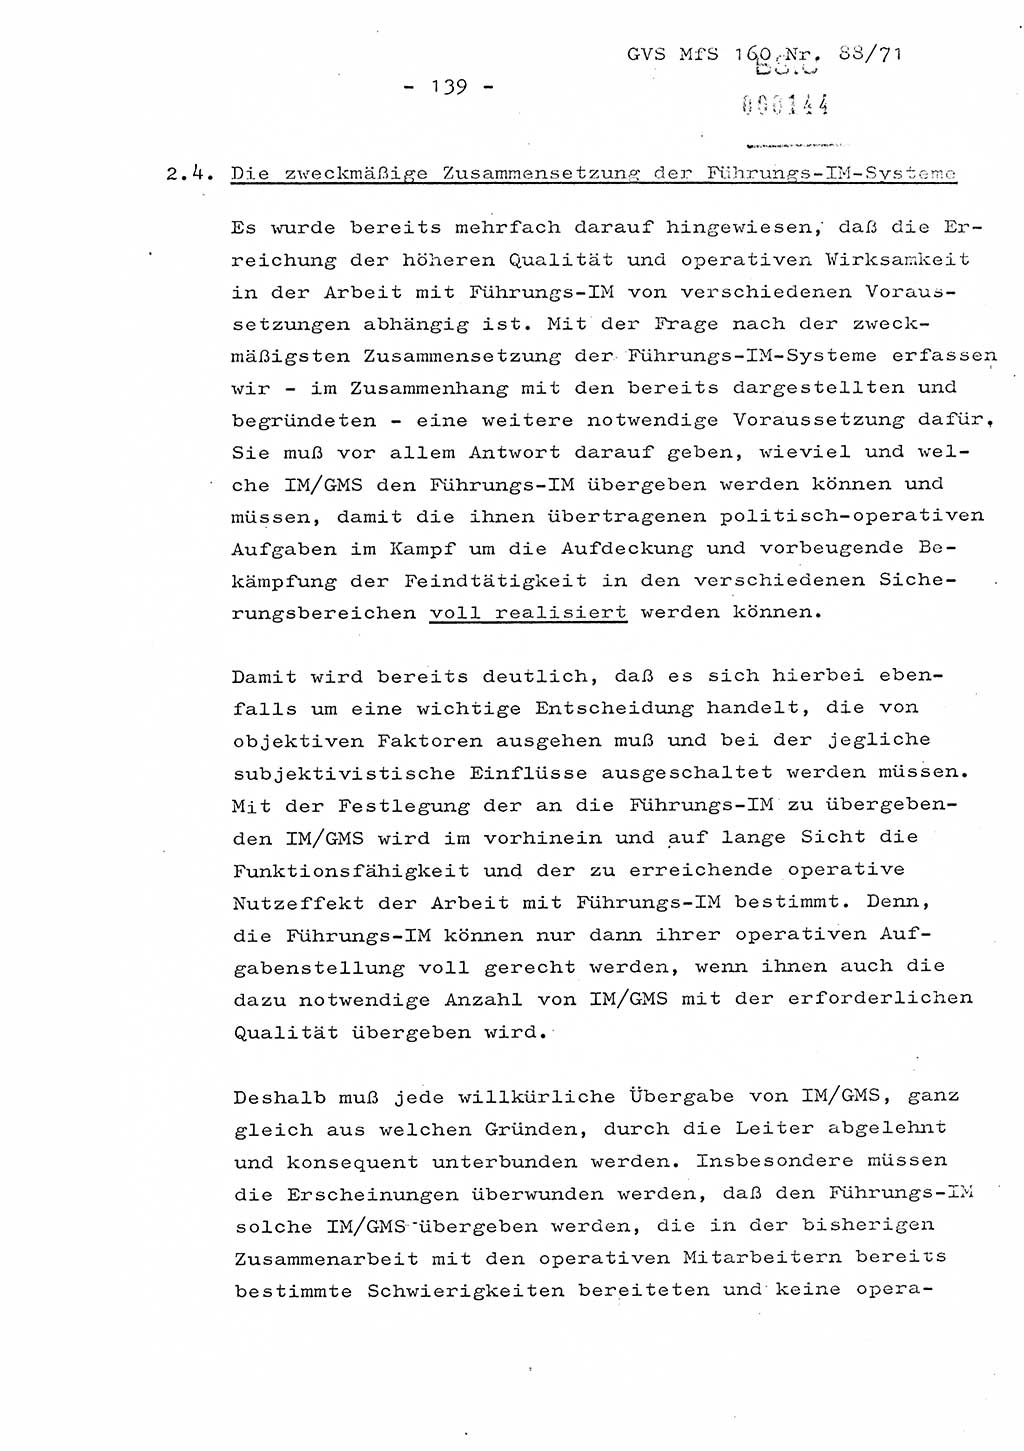 Dissertation Oberstleutnant Josef Schwarz (BV Schwerin), Major Fritz Amm (JHS), Hauptmann Peter Gräßler (JHS), Ministerium für Staatssicherheit (MfS) [Deutsche Demokratische Republik (DDR)], Juristische Hochschule (JHS), Geheime Verschlußsache (GVS) 160-88/71, Potsdam 1972, Seite 139 (Diss. MfS DDR JHS GVS 160-88/71 1972, S. 139)